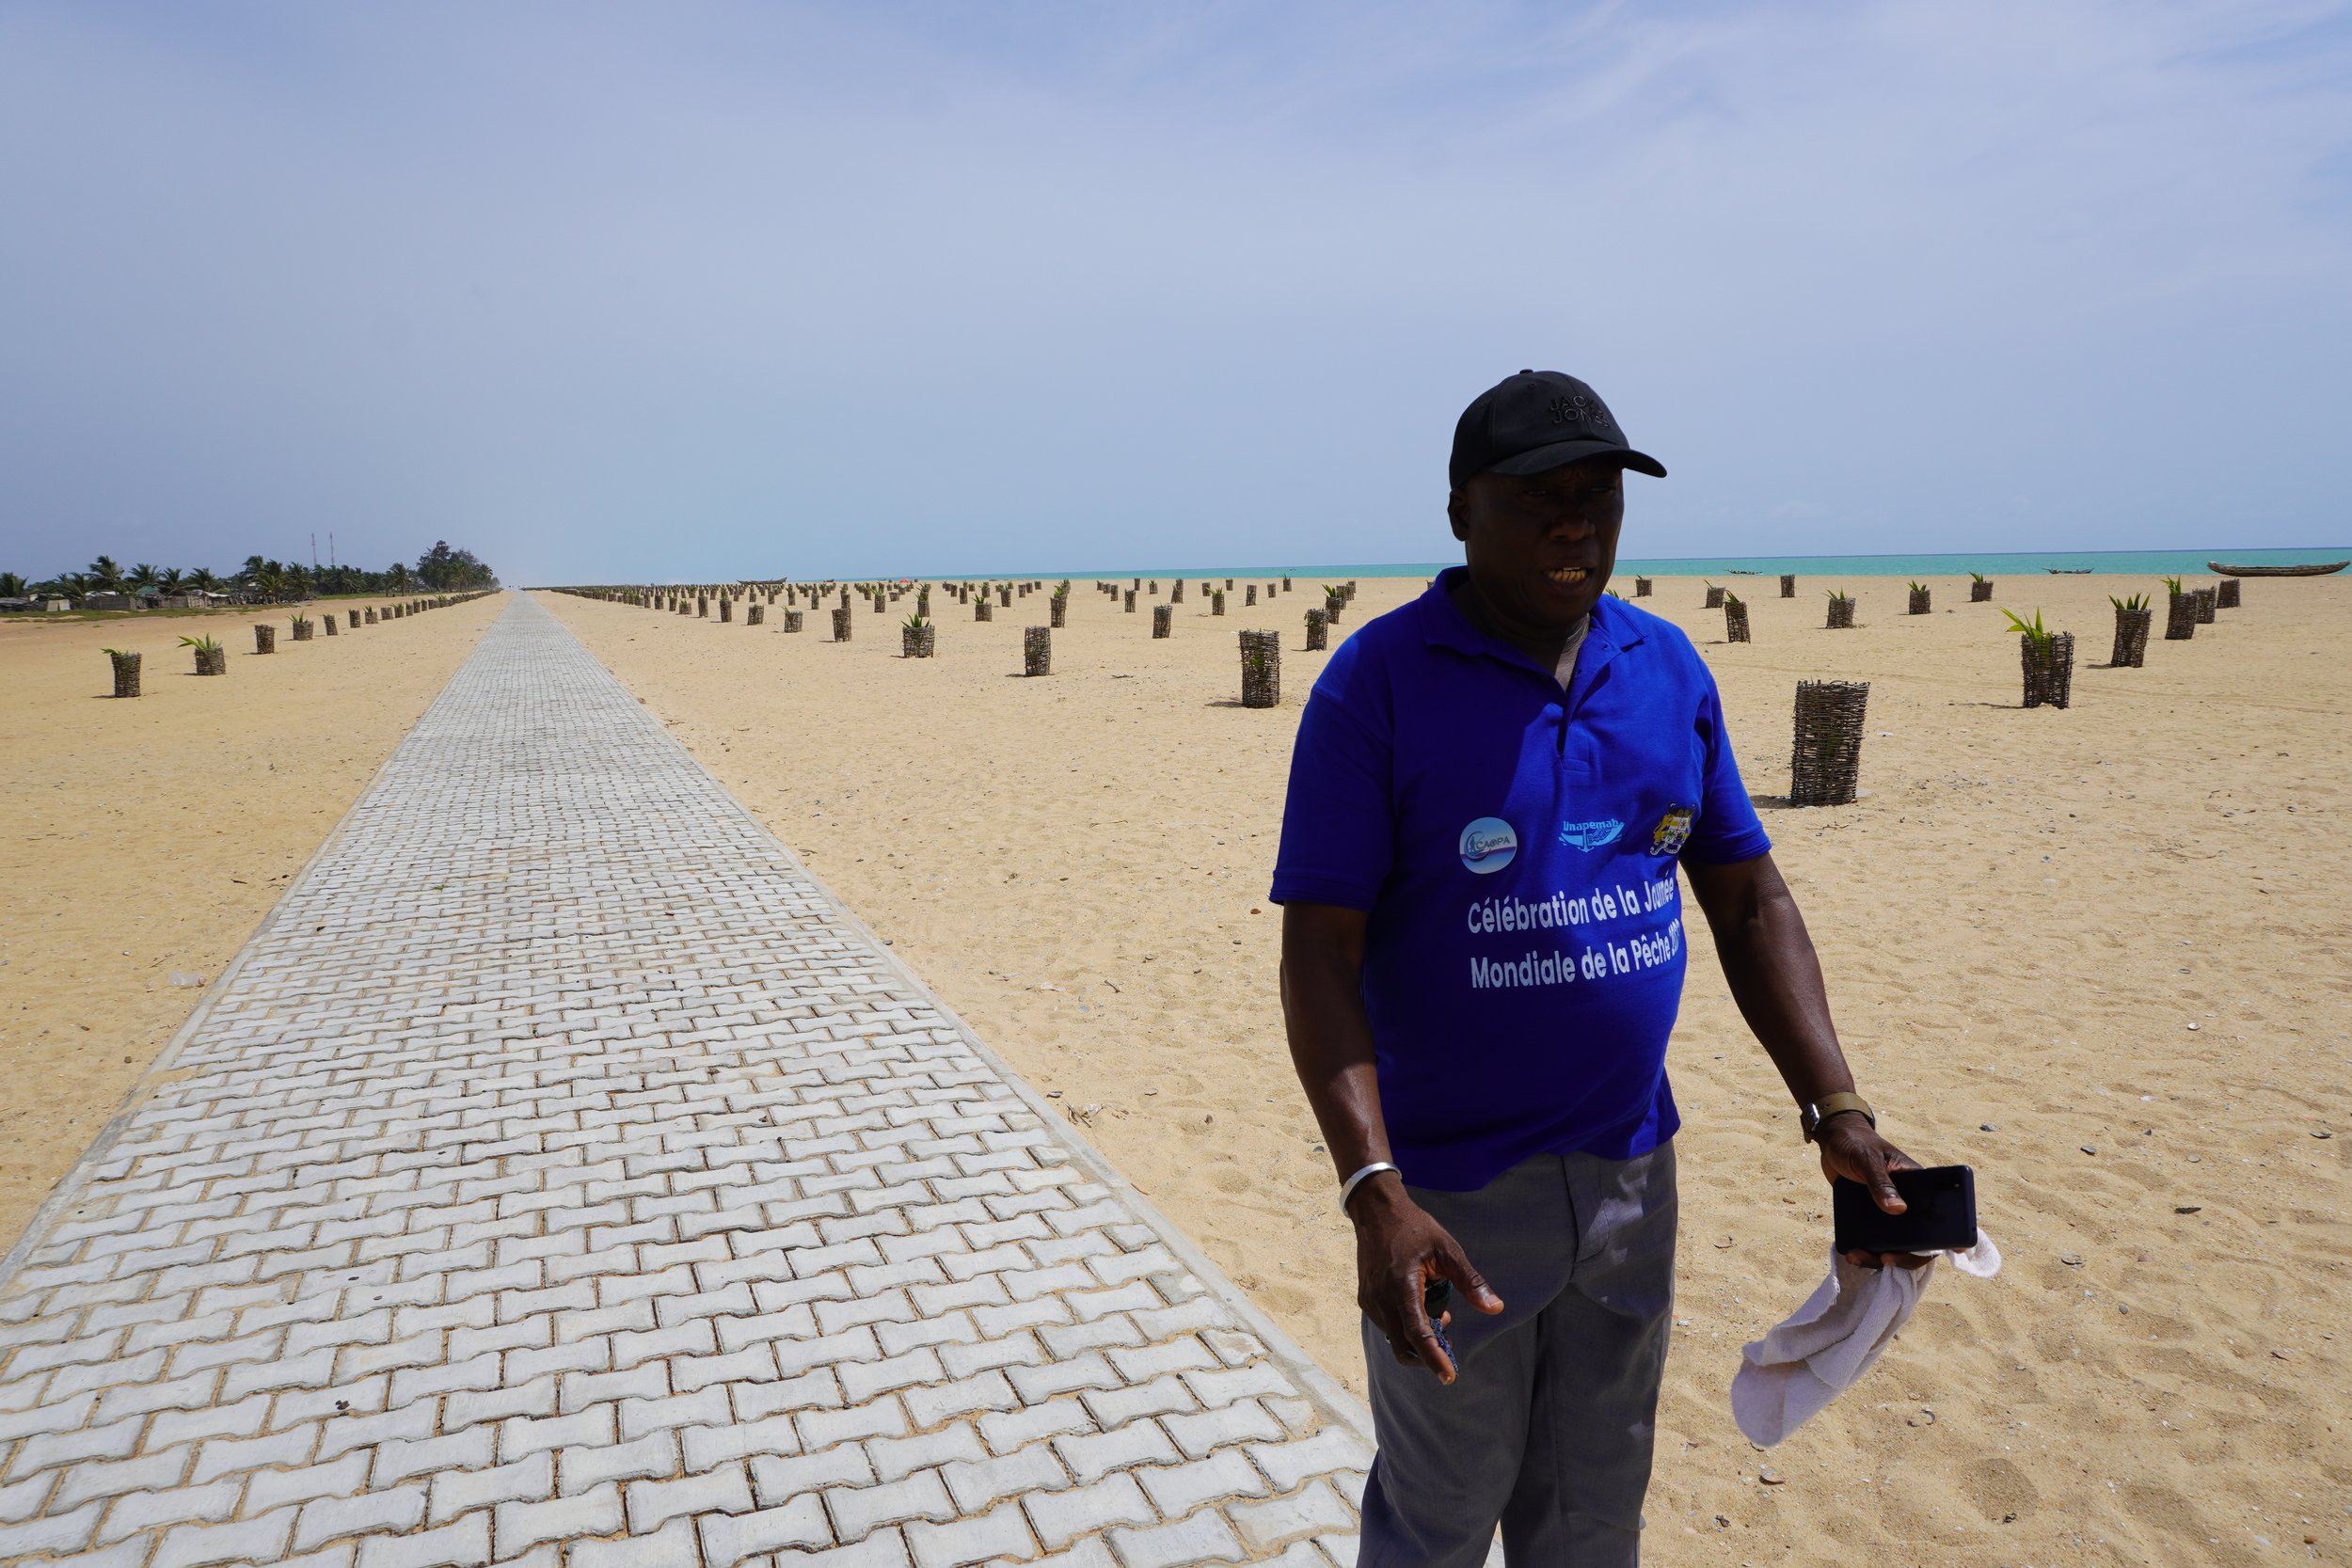  La banque mondiale a financé un projet de protection et la reconstitution de plus de 40 kilomètres de côtes s'étendant du littoral oriental du Togo au littoral occidental du Bénin en Afrique de l'Ouest, nous explique Zephirin Amedome, secrétaire de 